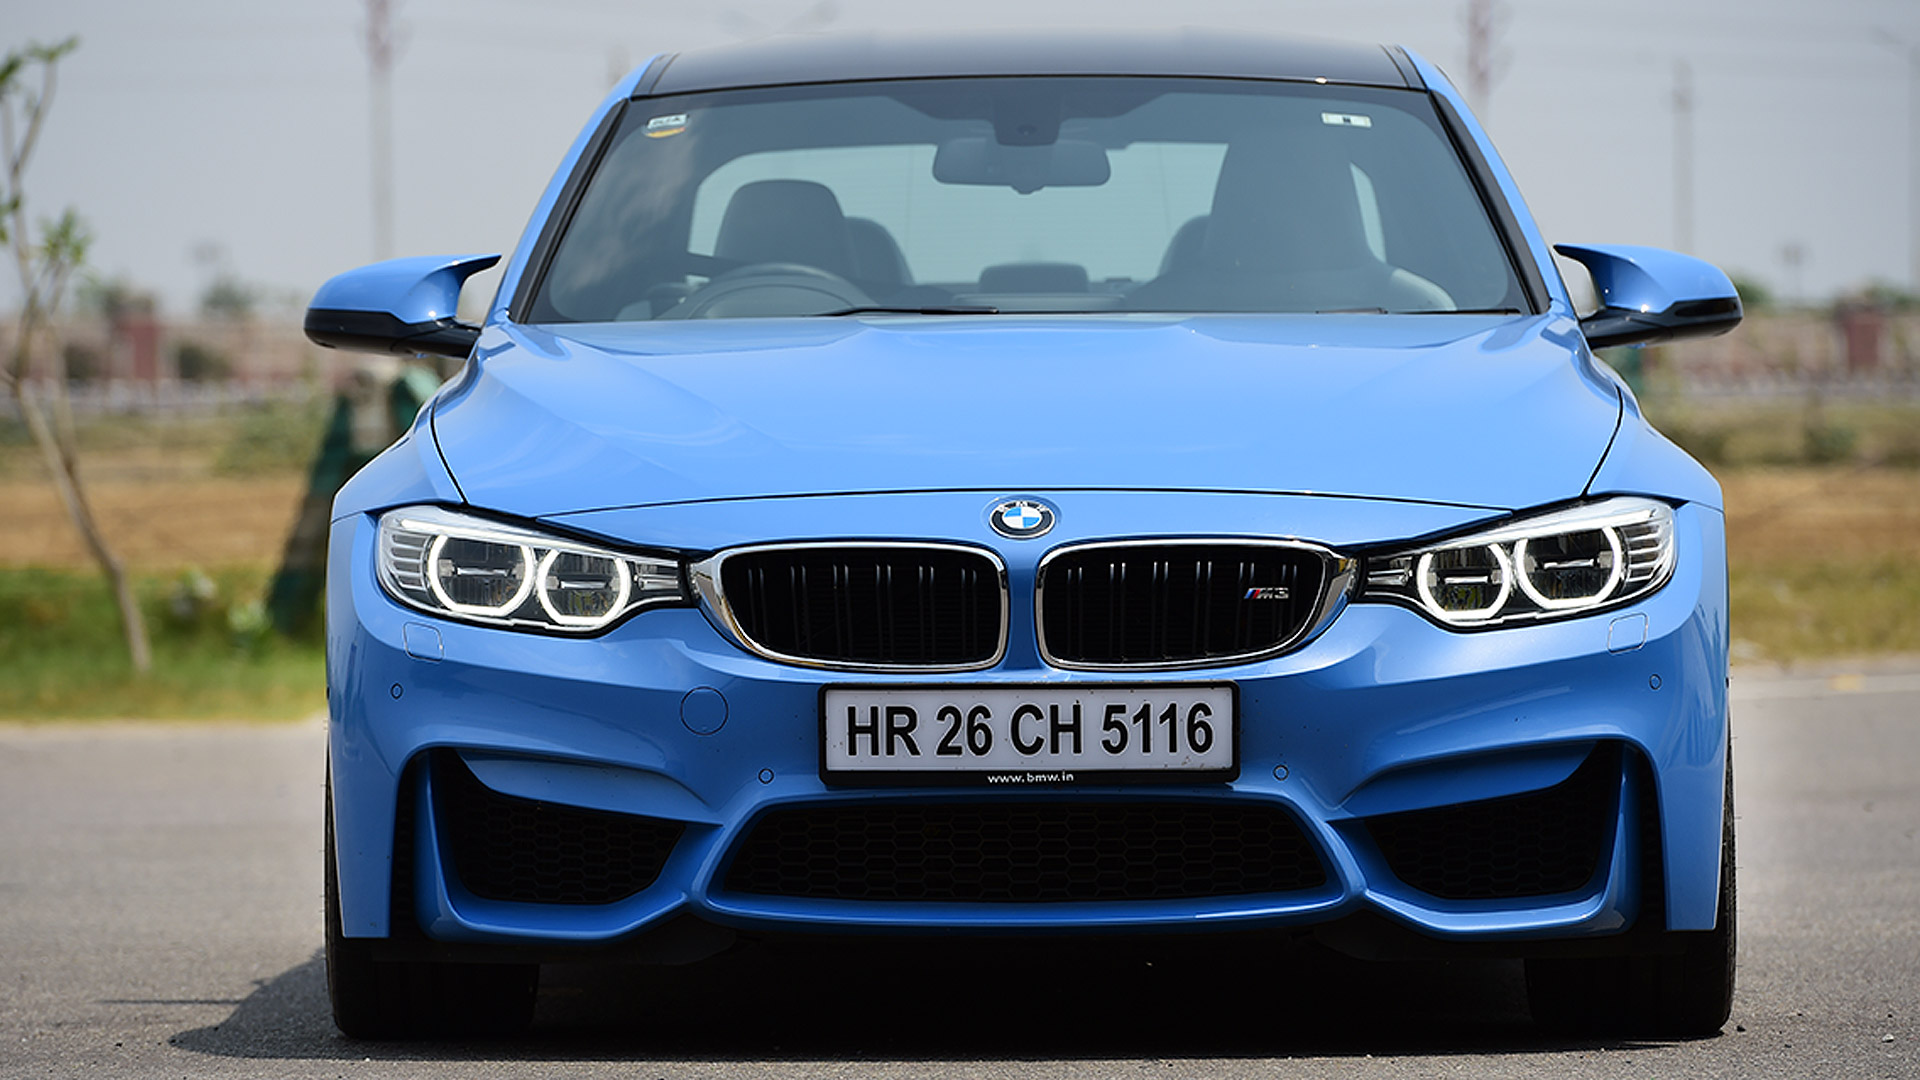 BMW M3 Sedan 2015 STD Compare